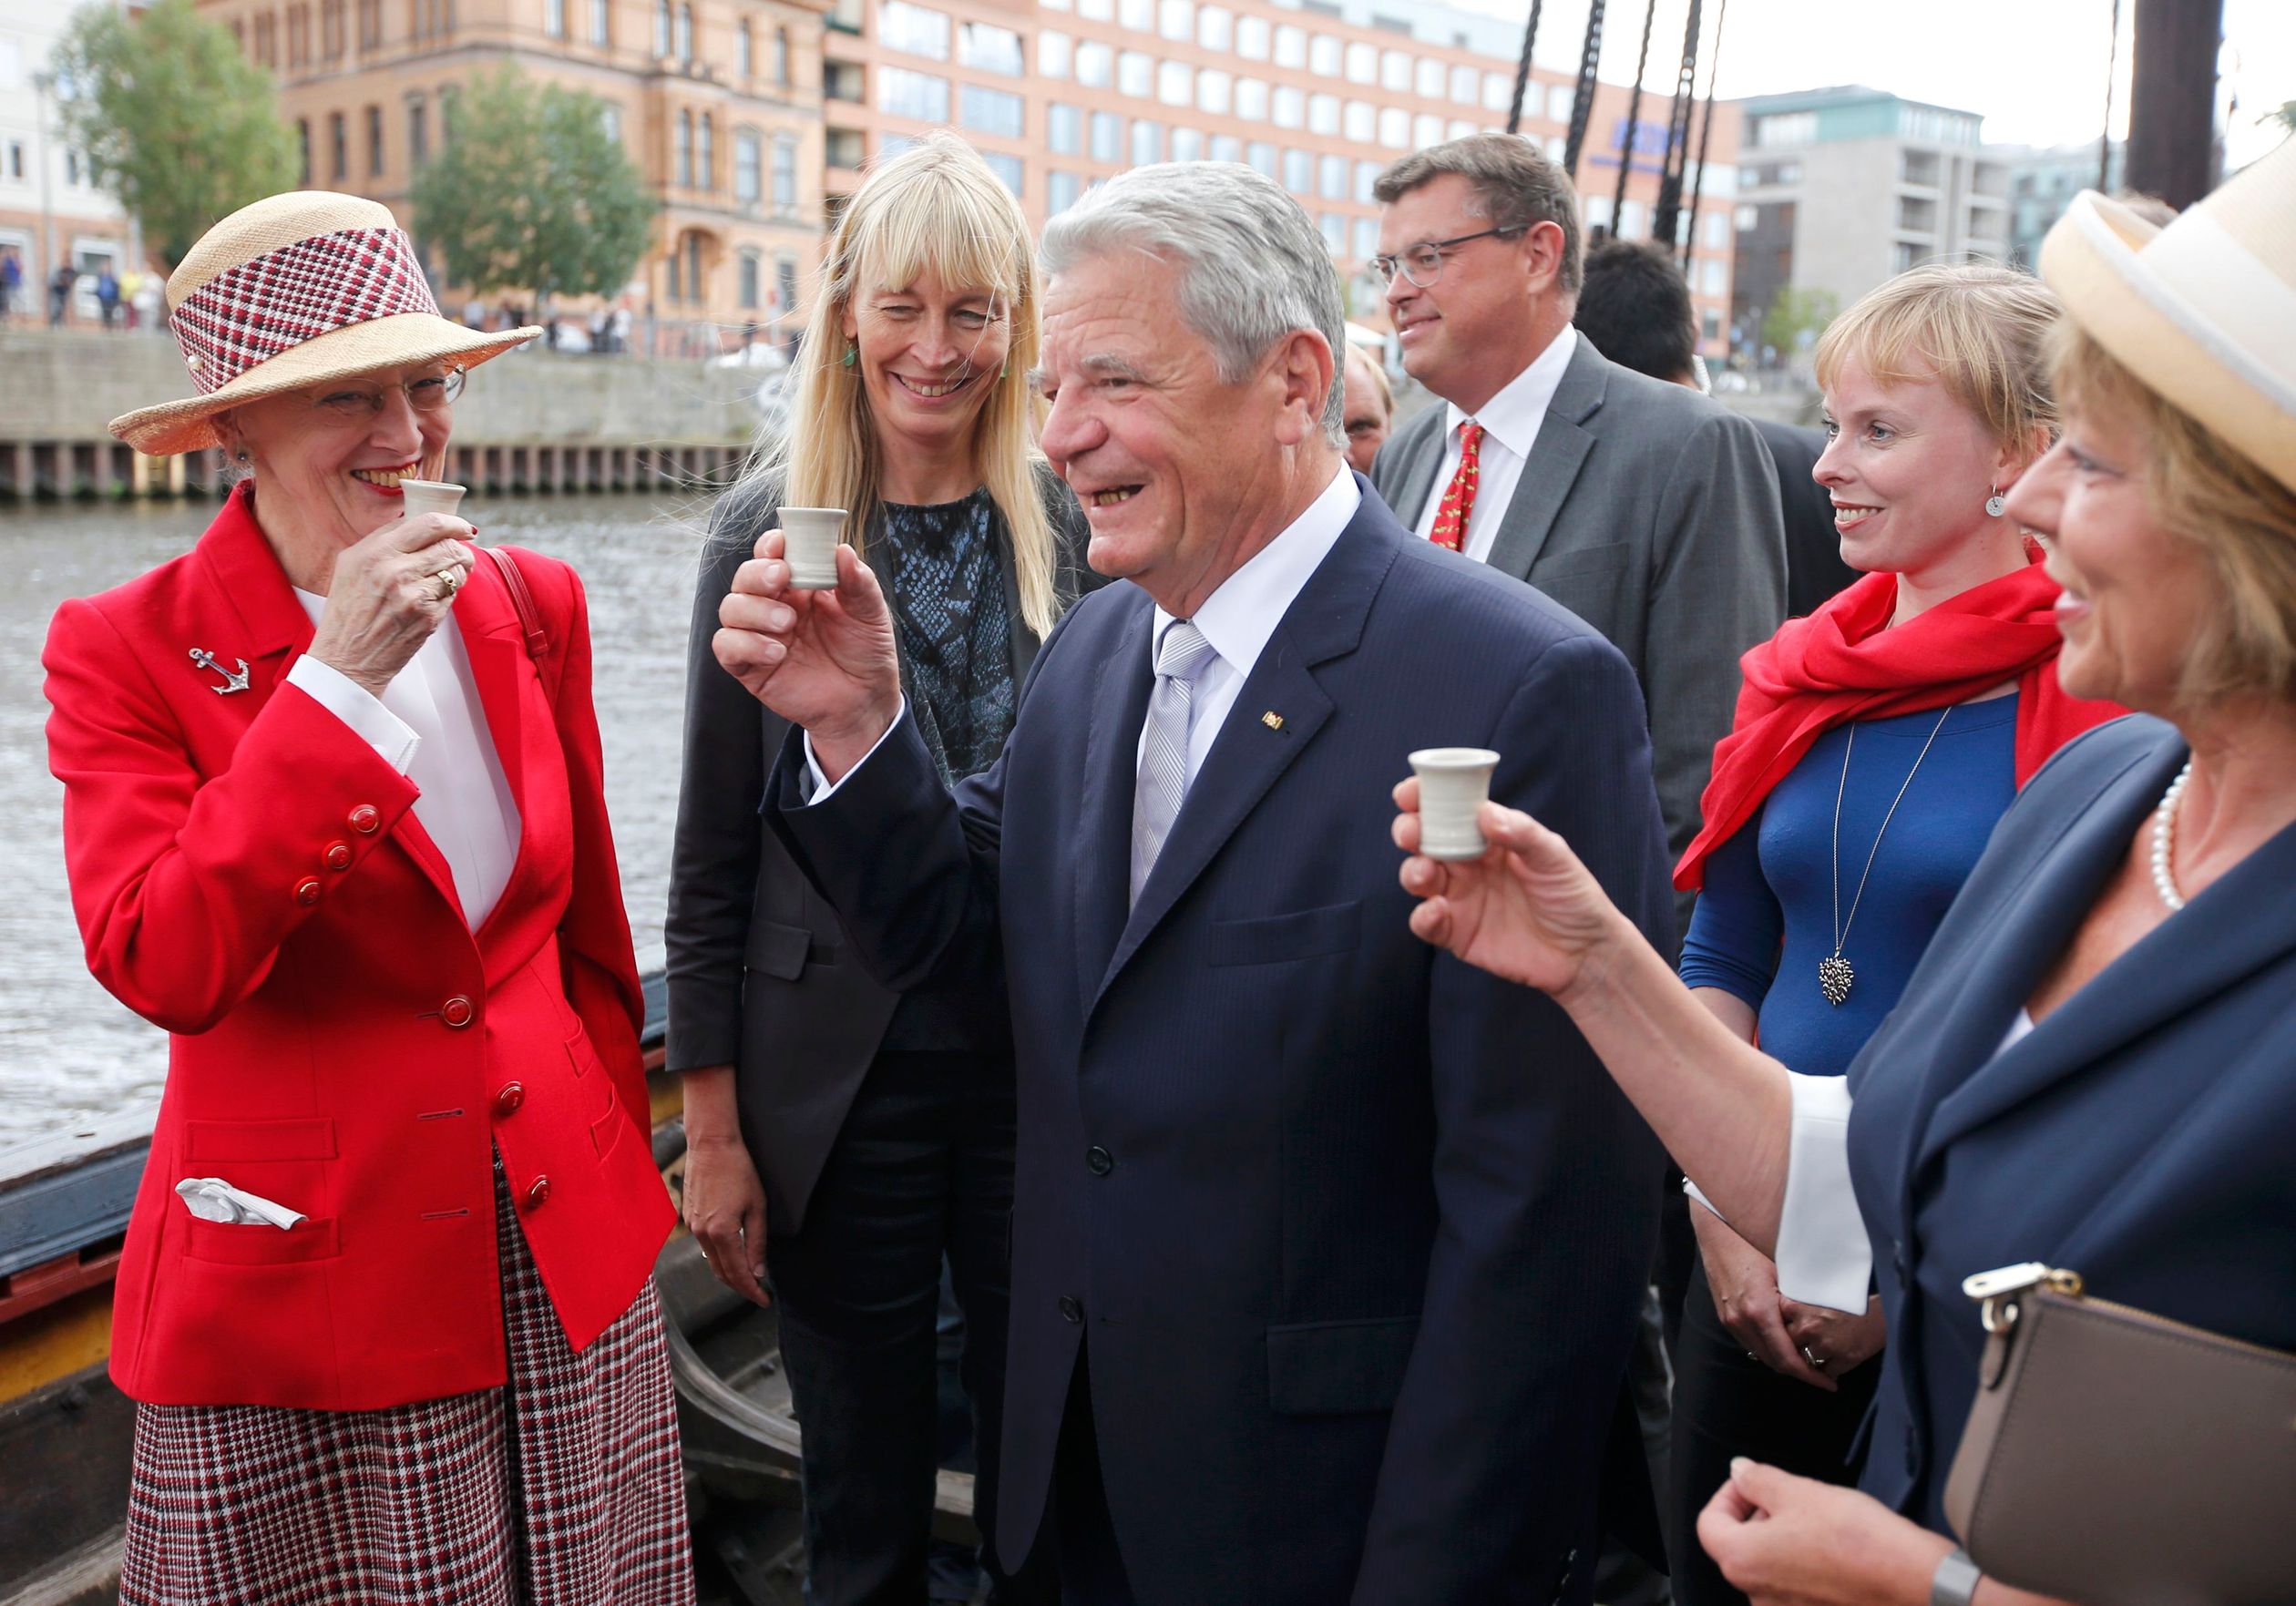 2014: koningin Margrethe II van Denemarken toast met traditionele Deense Mead-honingwijn met de Duitse president Joachim Gauck en zijn partner Daniela Schadt.